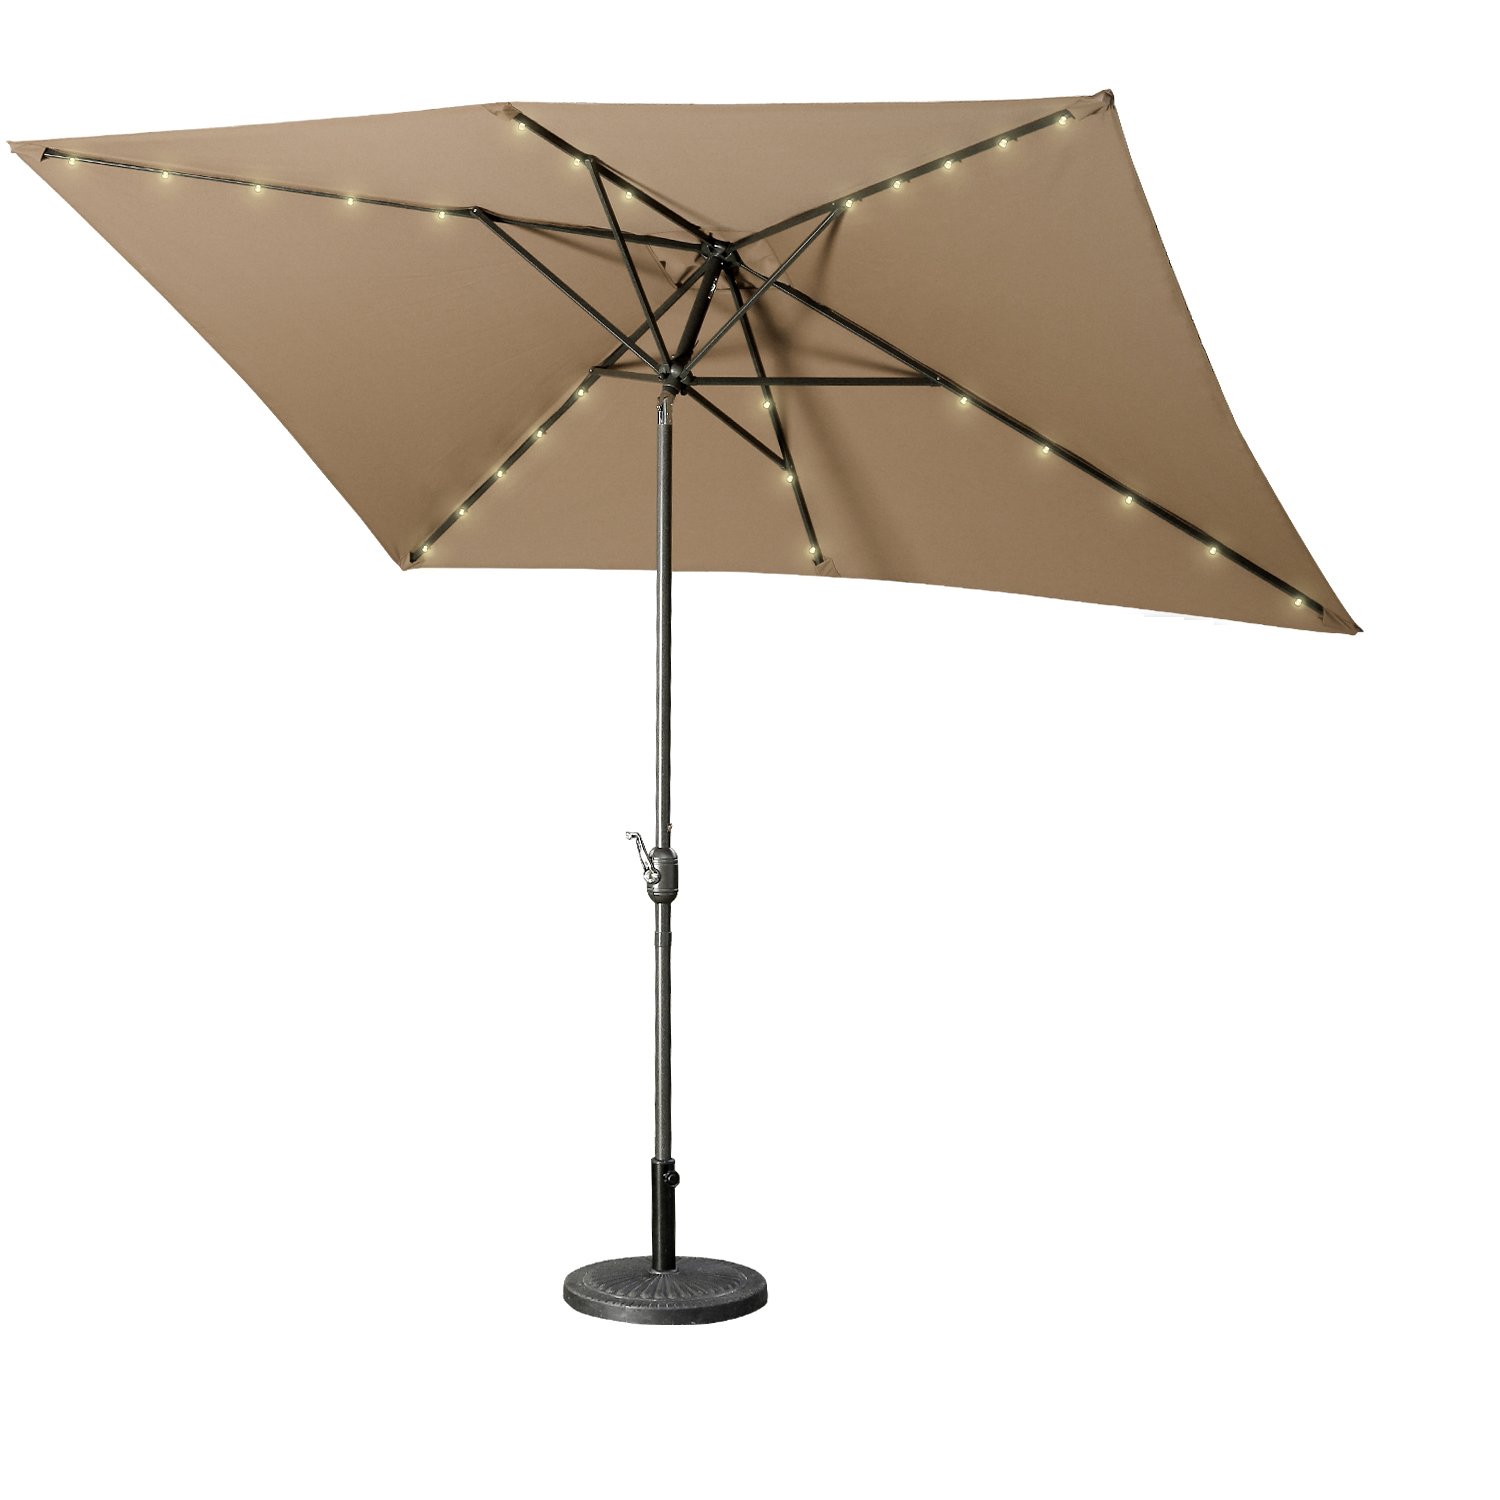 Casainc 10 ft. Aluminum LED Market Patio Umbrella in Brown-CASAINC